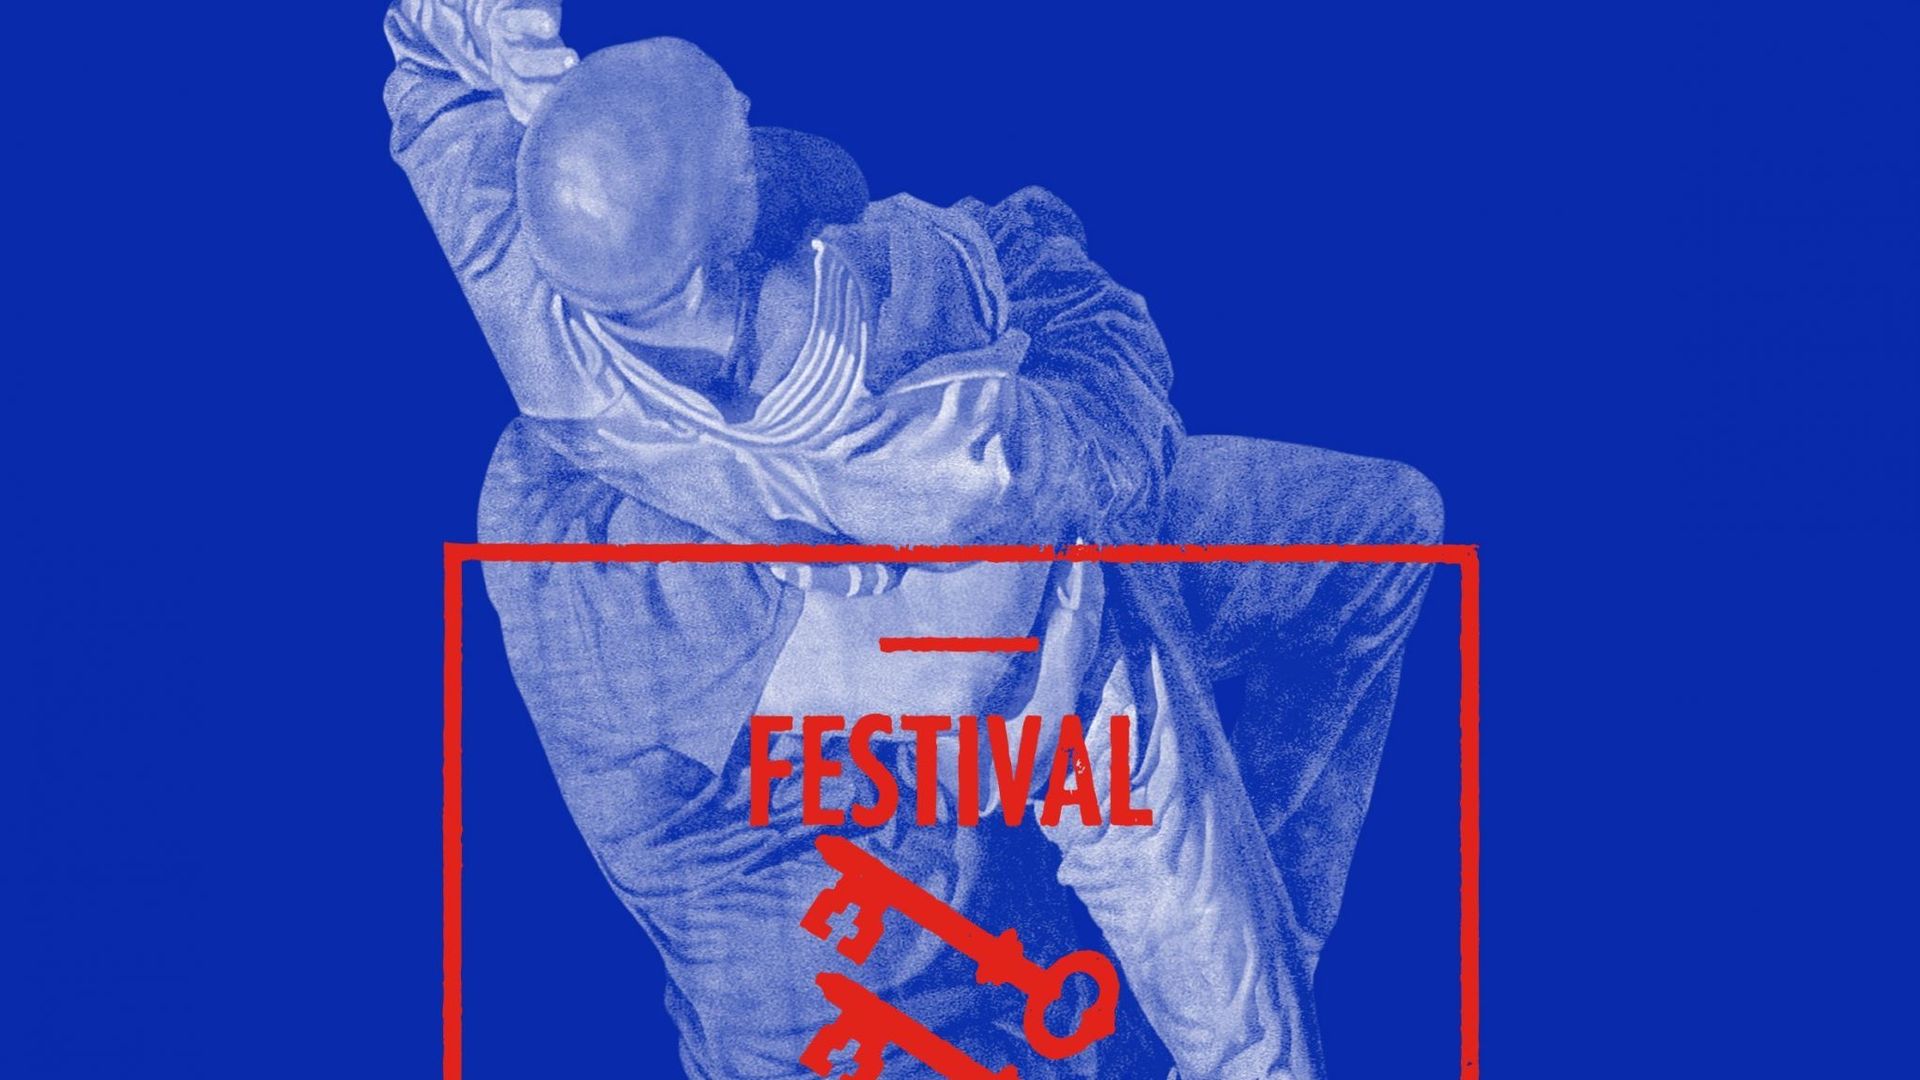 Le Festival d'Avignon se tiendra du 4 au 25 juillet 2015